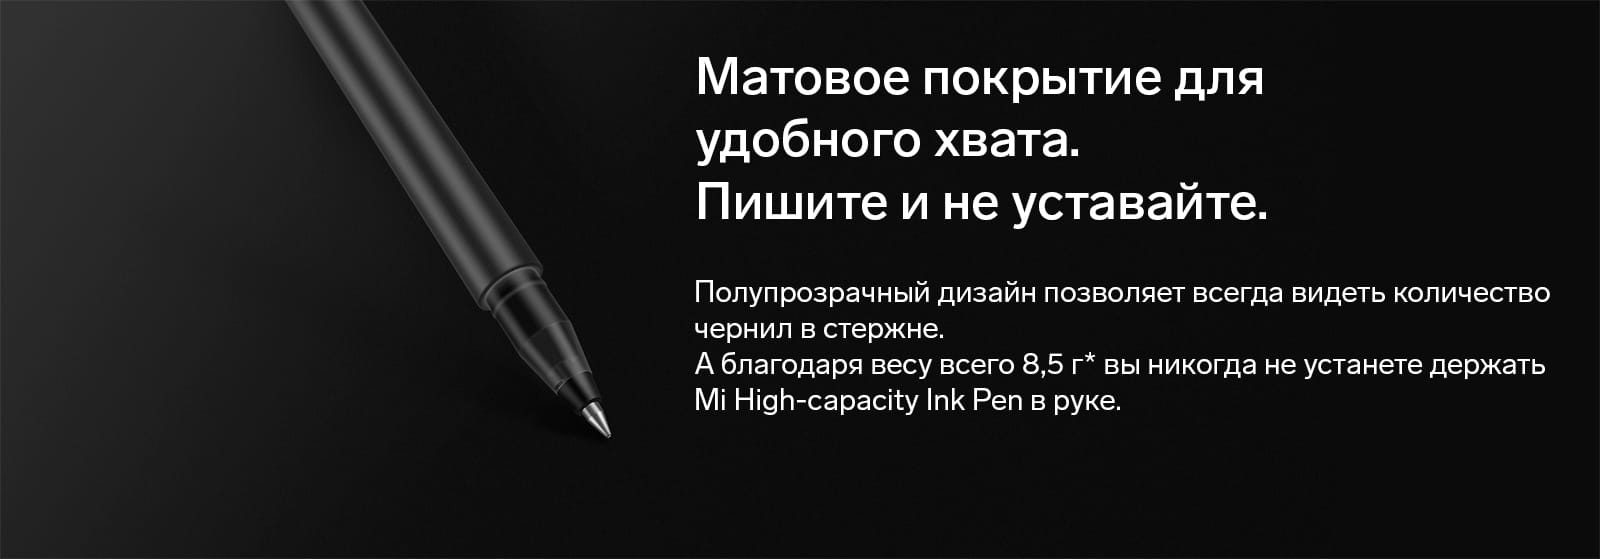 Ручка Mi High-capacity Ink Pen Матовое покрытие